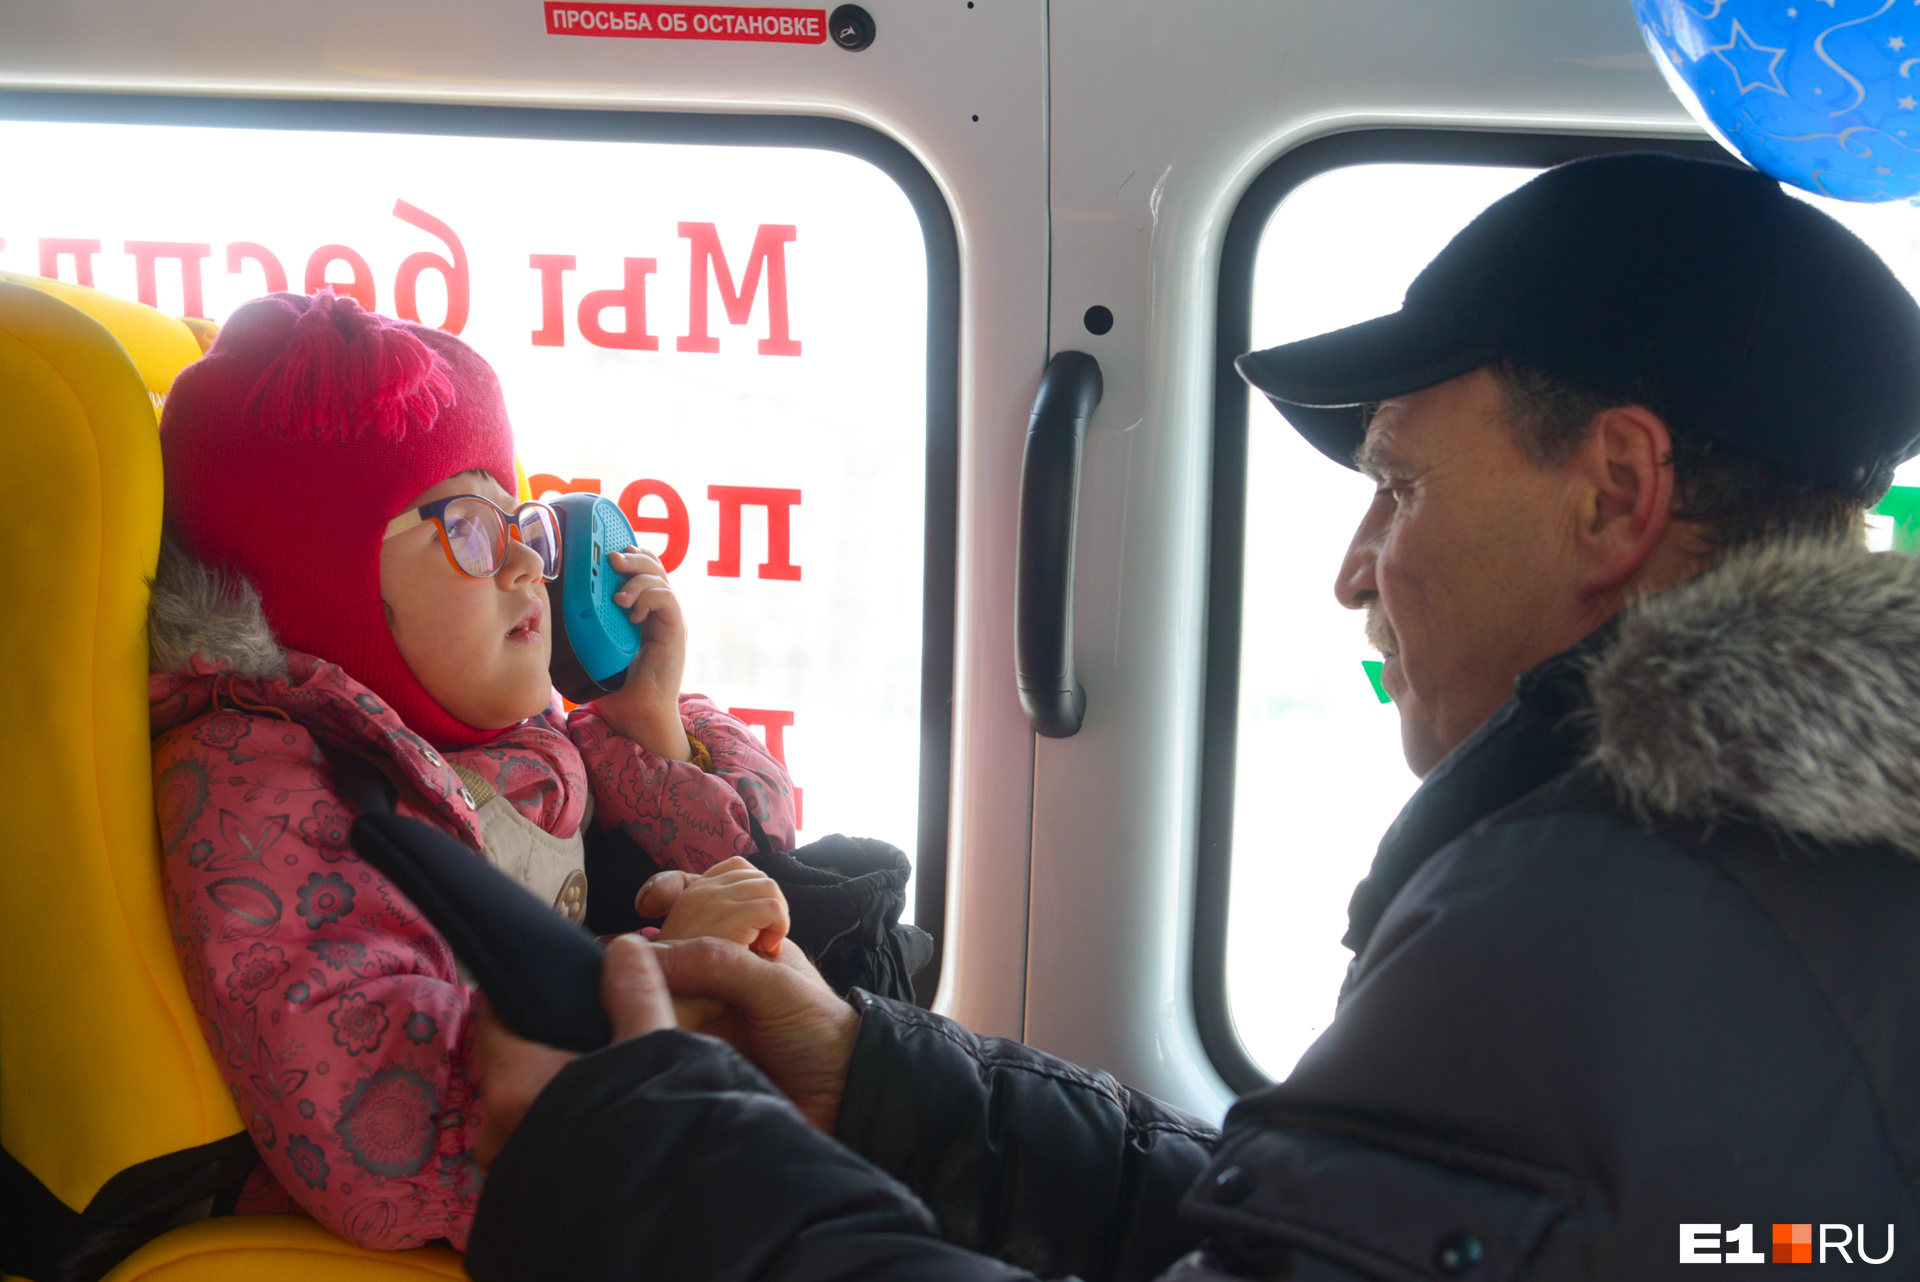 Герман Георгиевич не просто водитель: он помогает родителям погрузить в машину ребенка, успокаивает, разговаривает